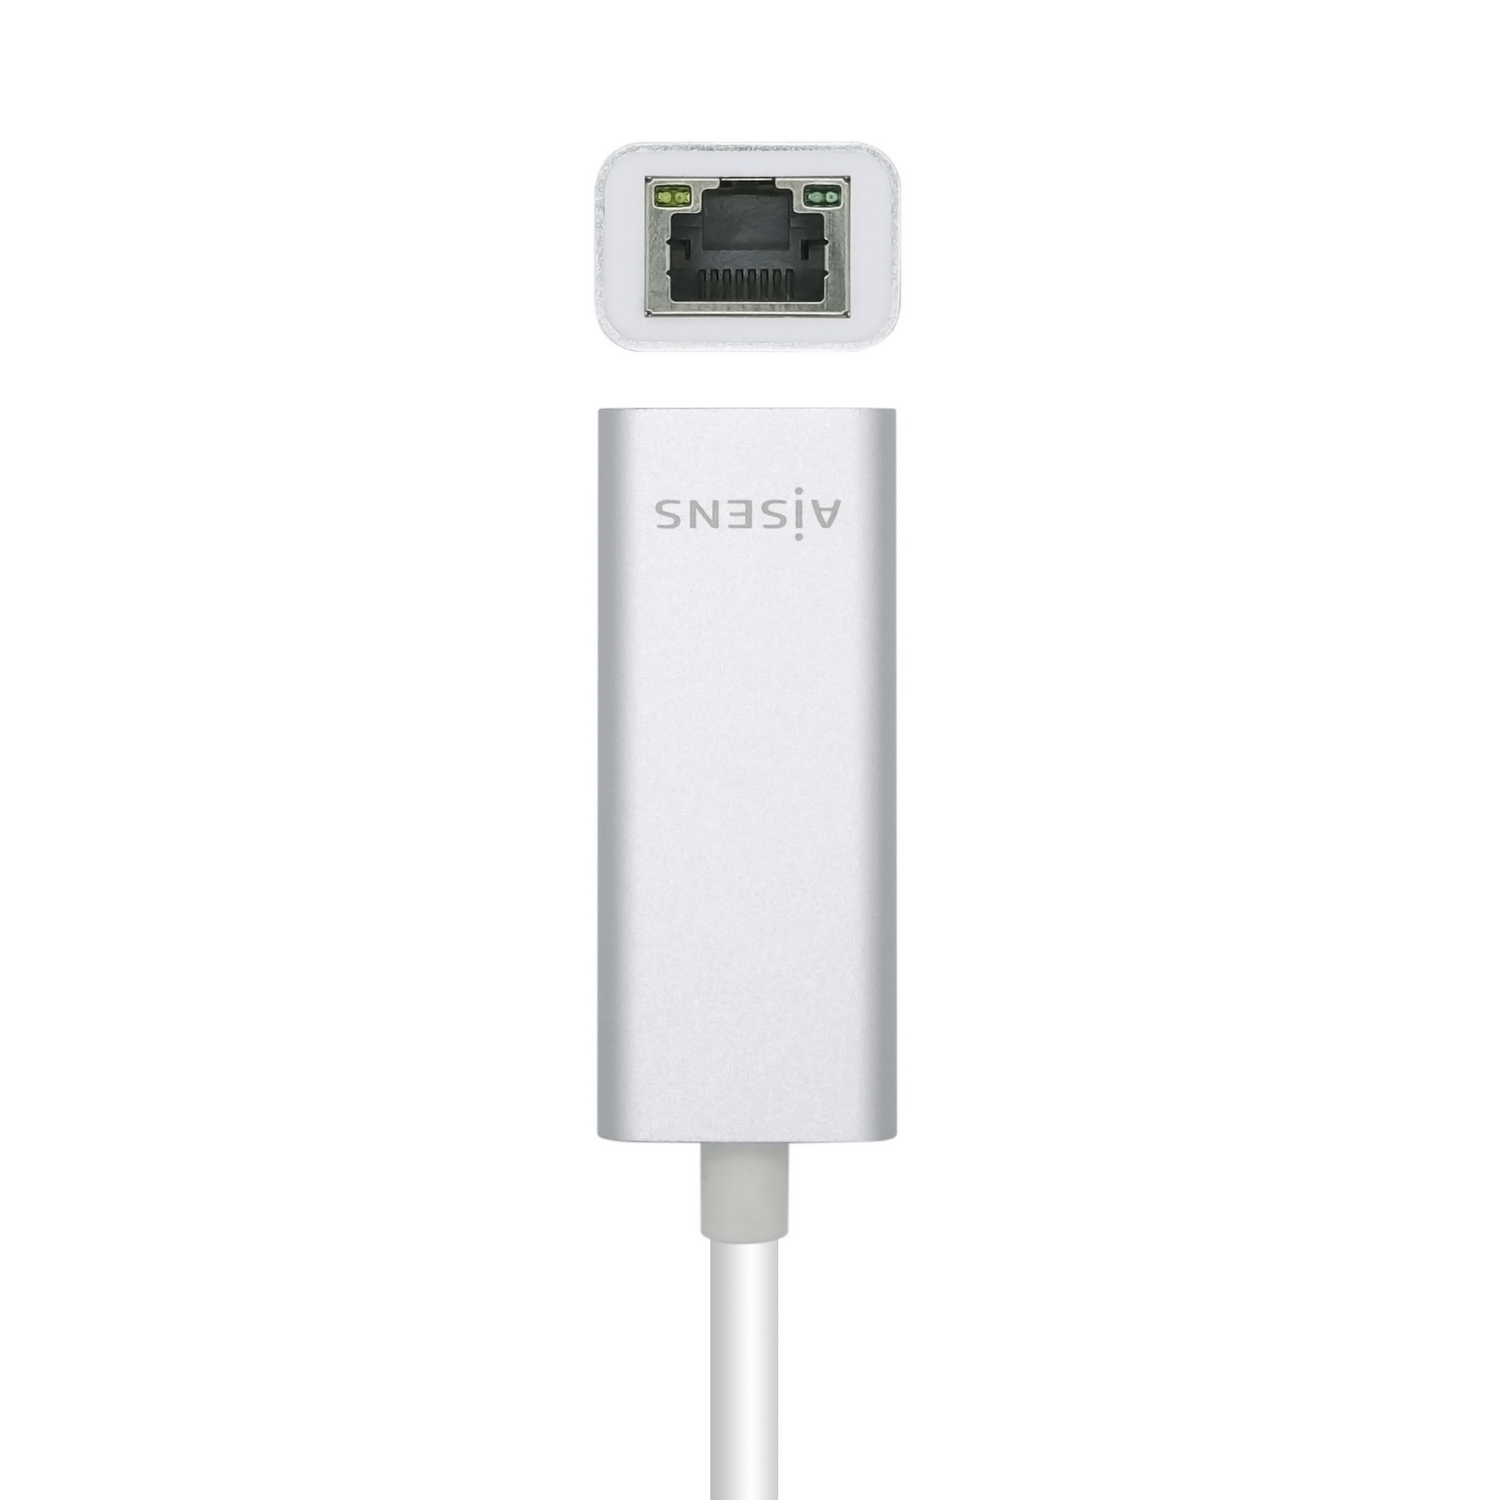 Aisens Convertisseur USB 3.0 vers Gigabit Ethernet 10/100/1000 Mbps - 15cm - Couleur Argent